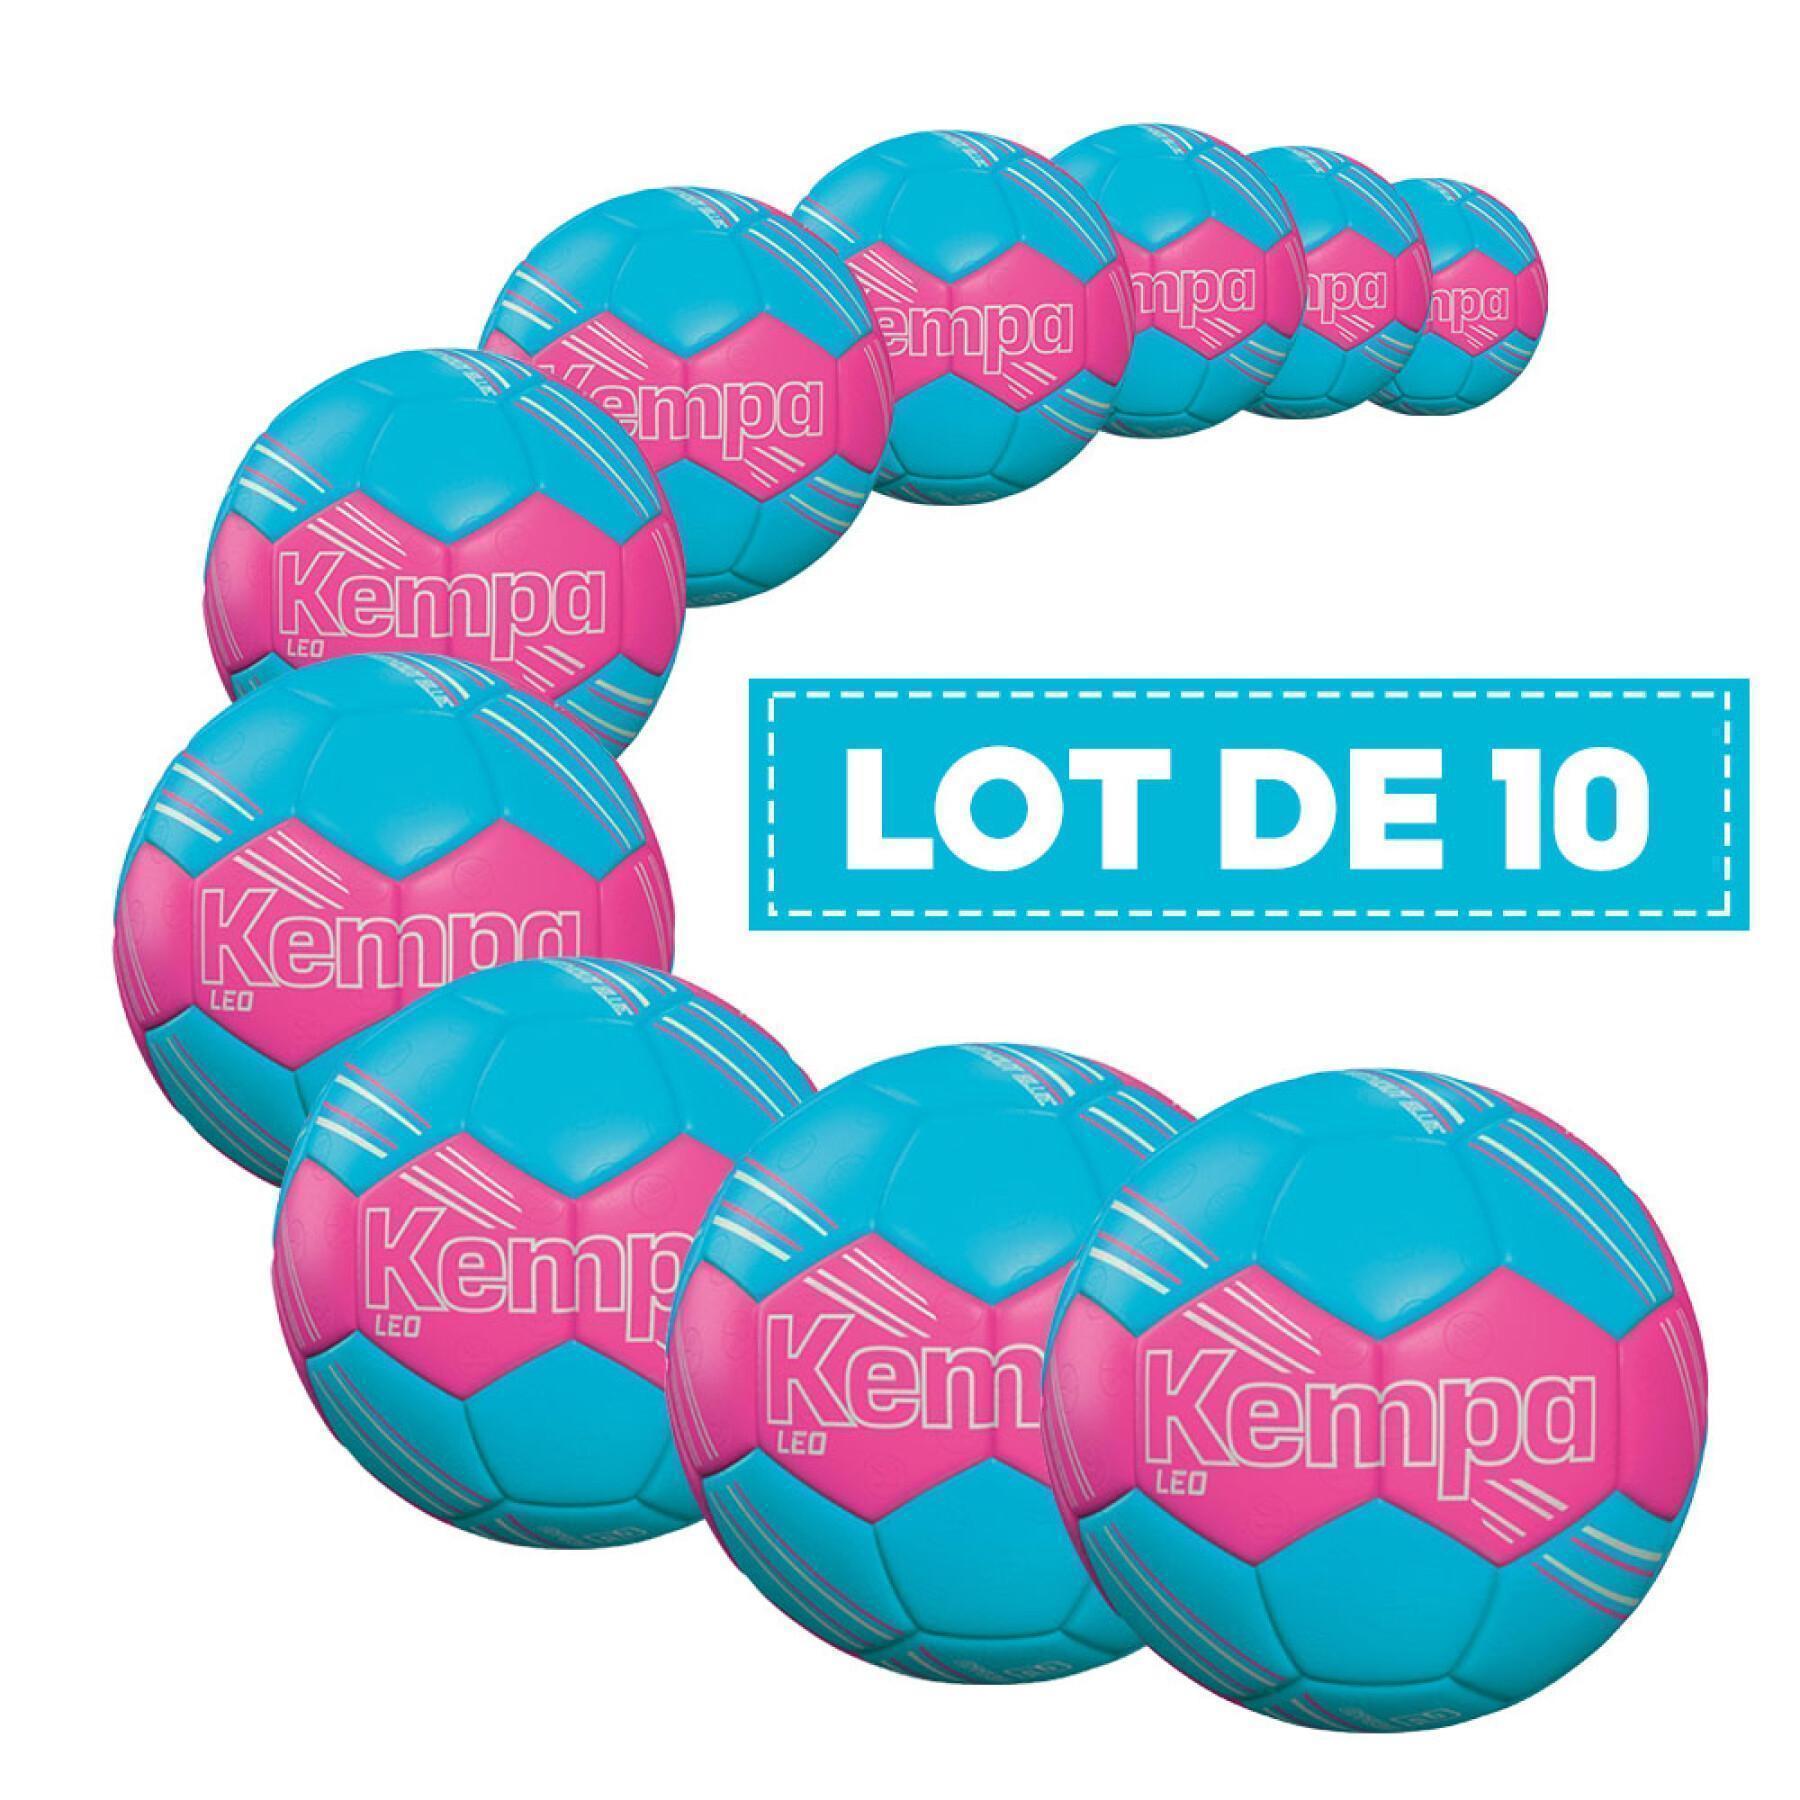 Förpackning med 10 ballonger Kempa Leo